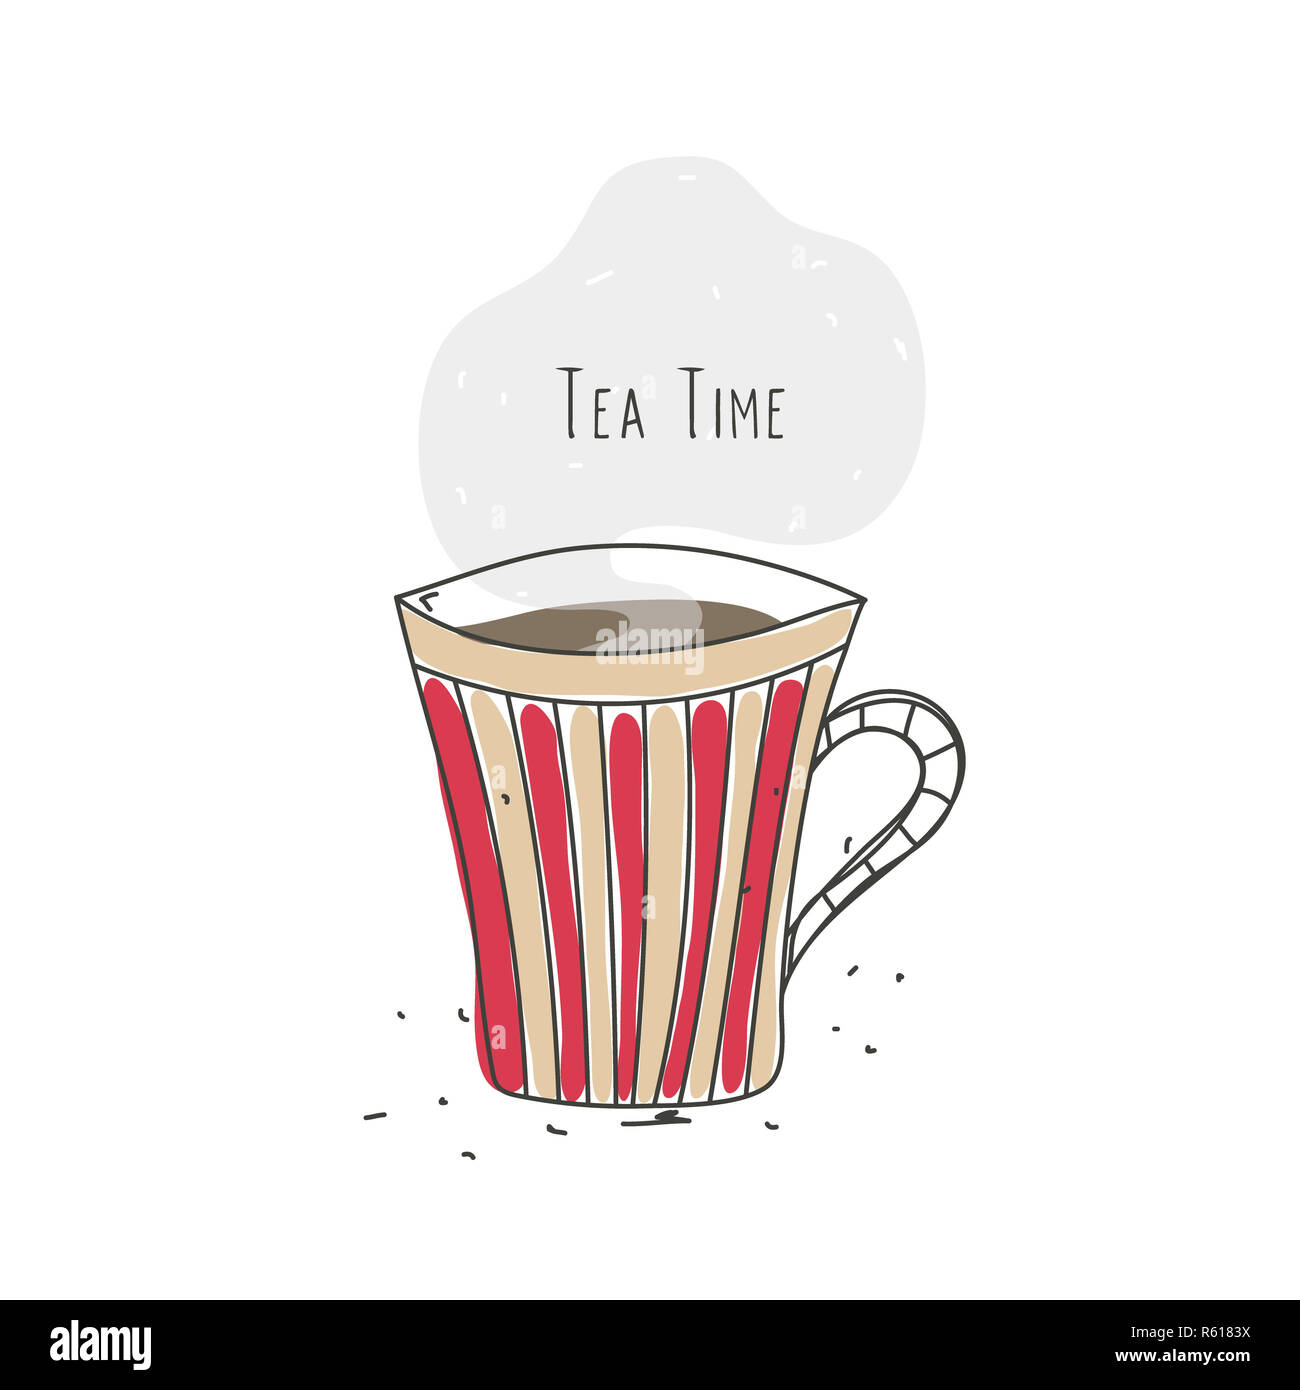 L'heure du thé. Tasse à rayures avec boisson chaude. Conception de la ligne. Doodle. Affiche, logo, emblème, symbole de café ou restaurant Banque D'Images